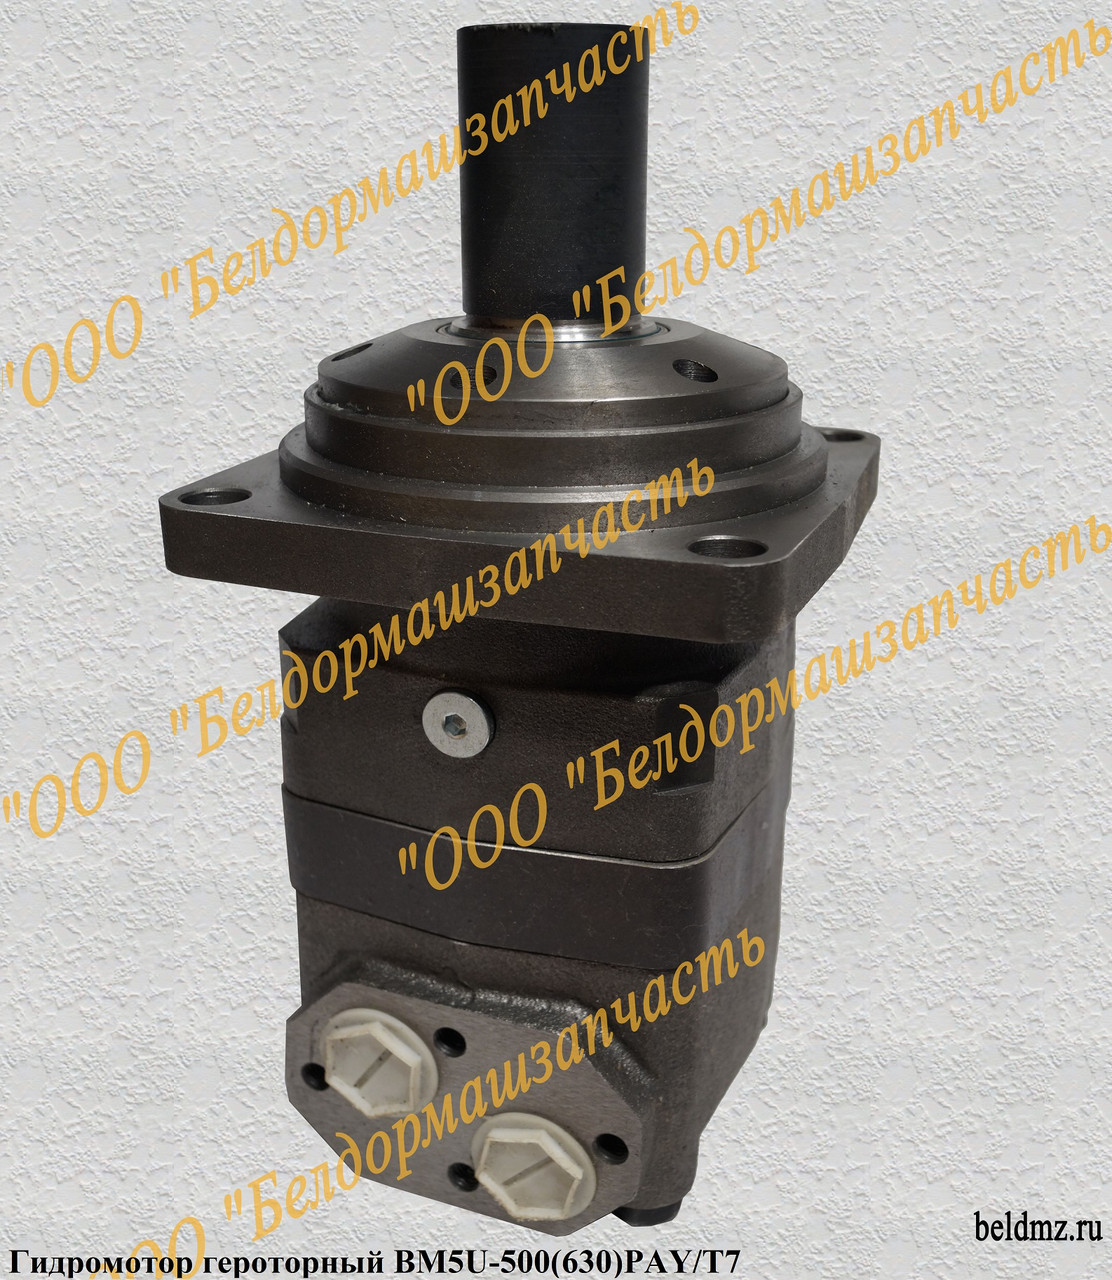 Гидромотор героторный DK.BM5U-(500)630PAY.BK/T7 (BM5U-500(630)PAY/T7)